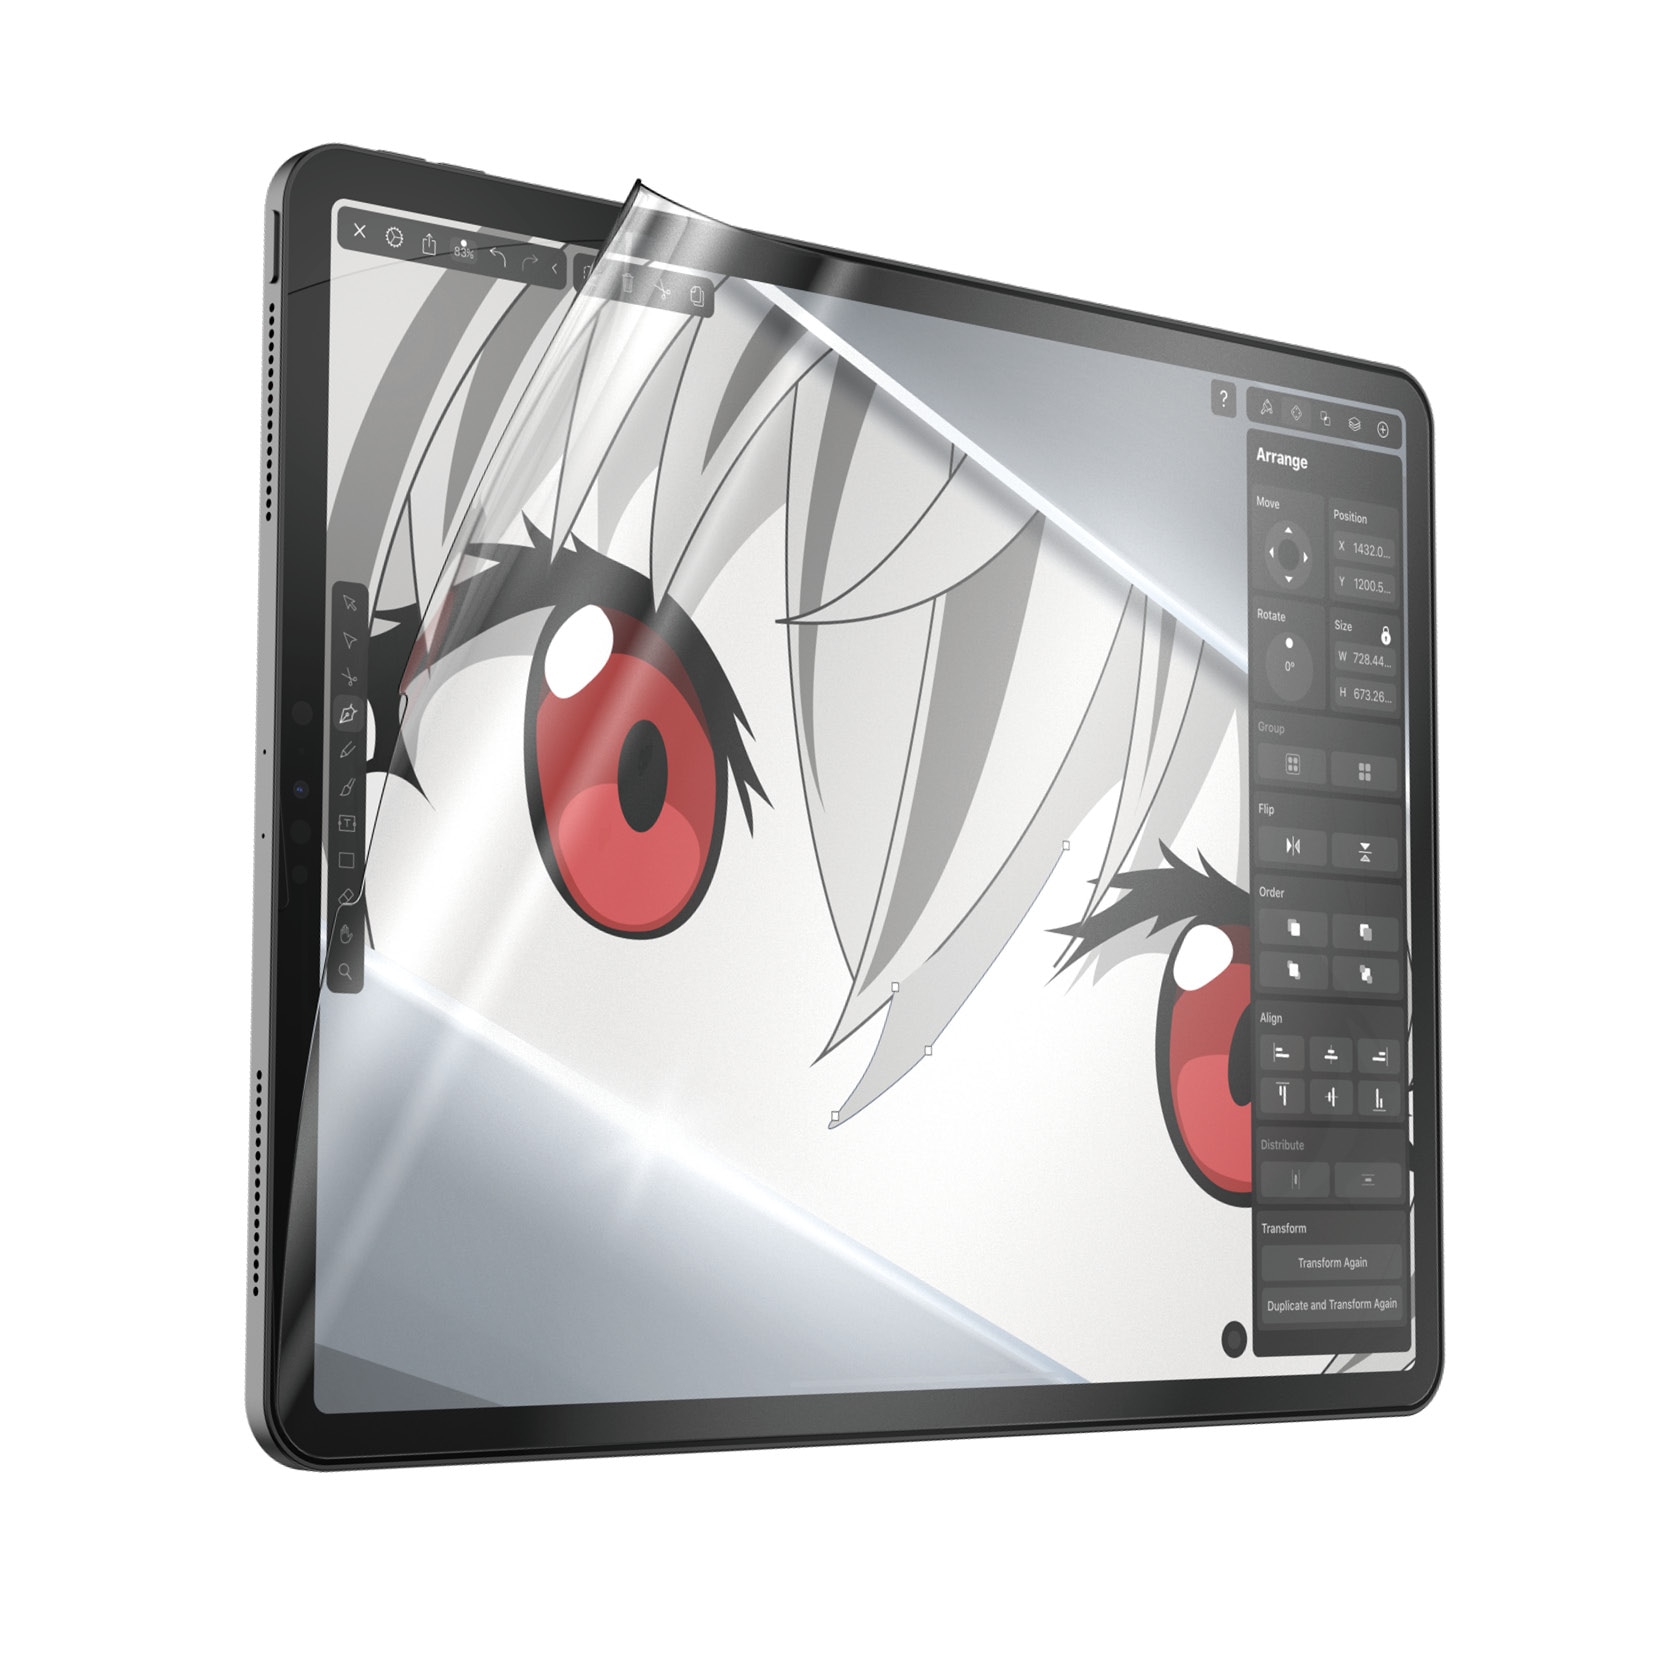 iPad Pro 12.9 4th Gen (2020) GraphicPaper Displayschutz